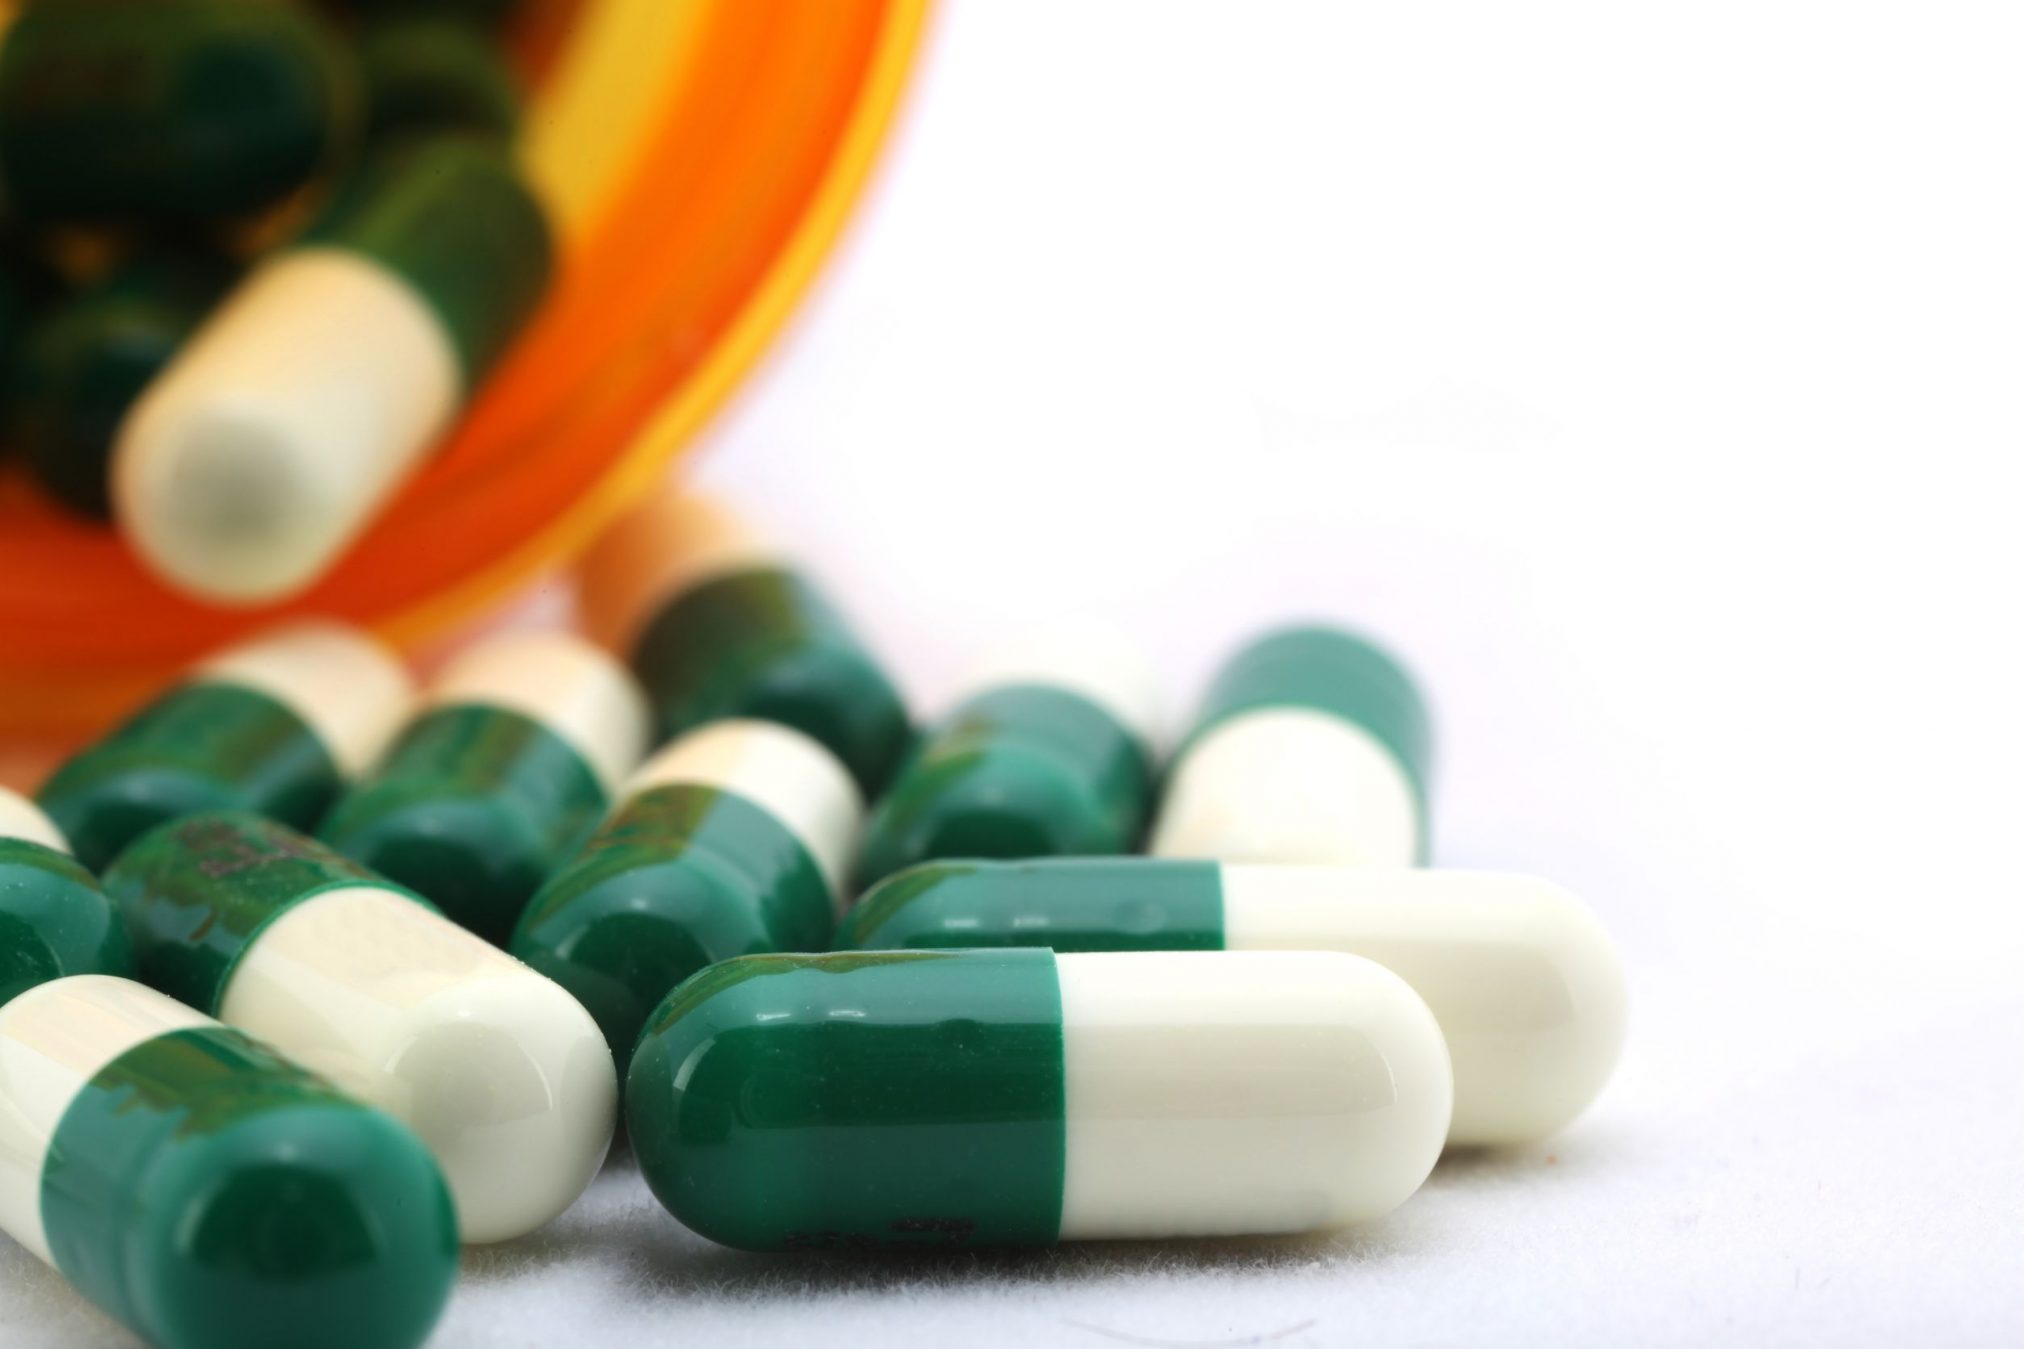 green and white antibiotics